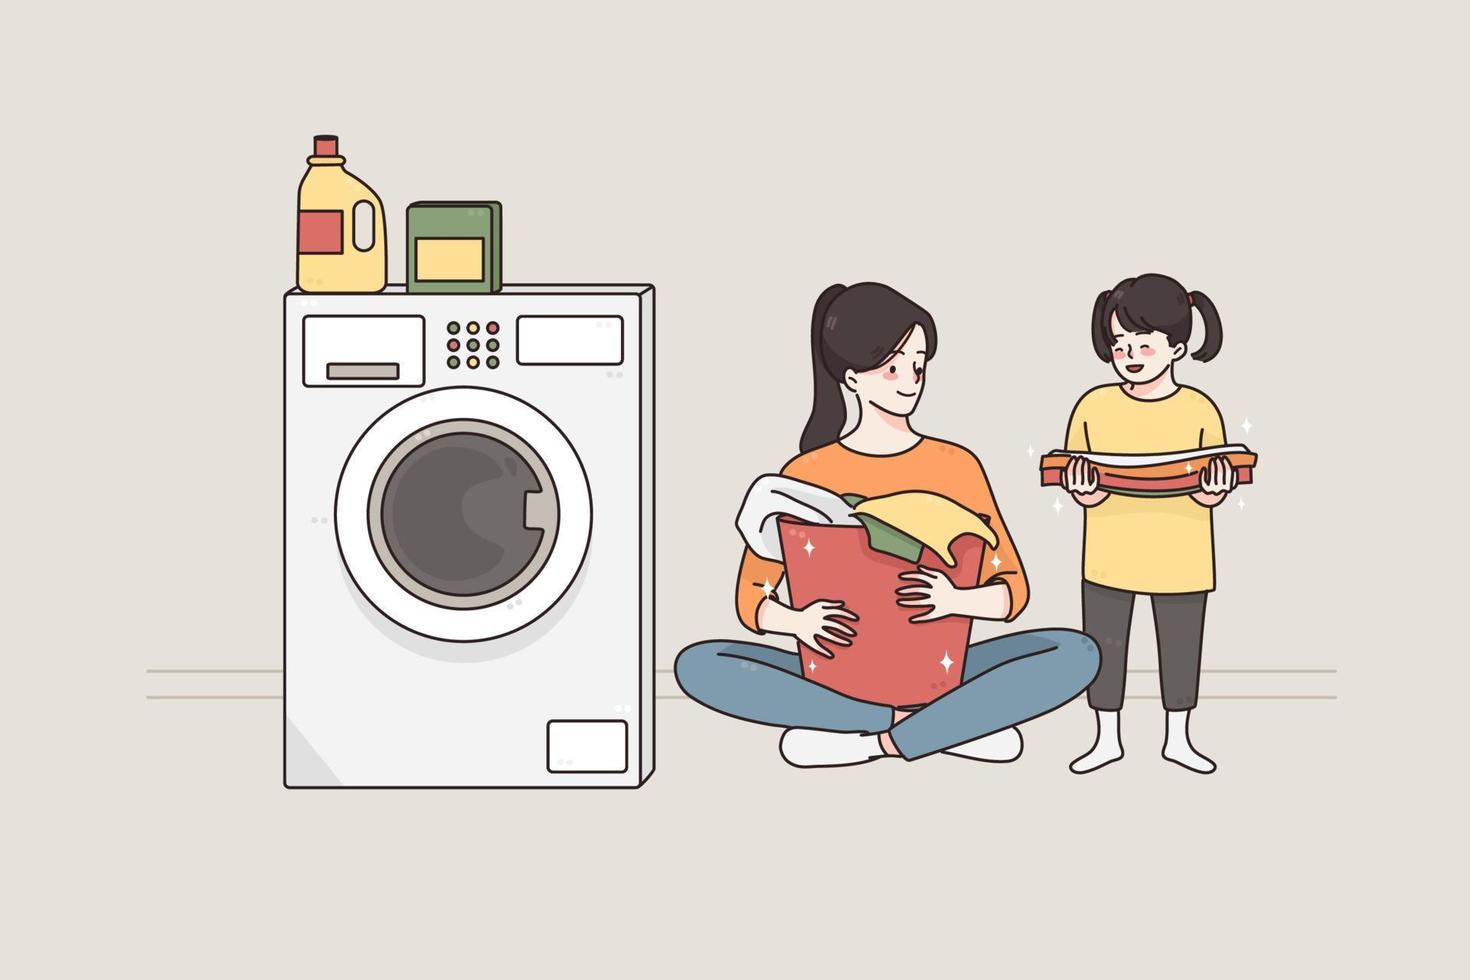 lavar la ropa y pasar tiempo con el concepto de los niños. joven sonriente mujer feliz y su pequeña hija personajes de dibujos animados sentados en el suelo preparando ropa sucia para lavar juntos ilustración vectorial vector